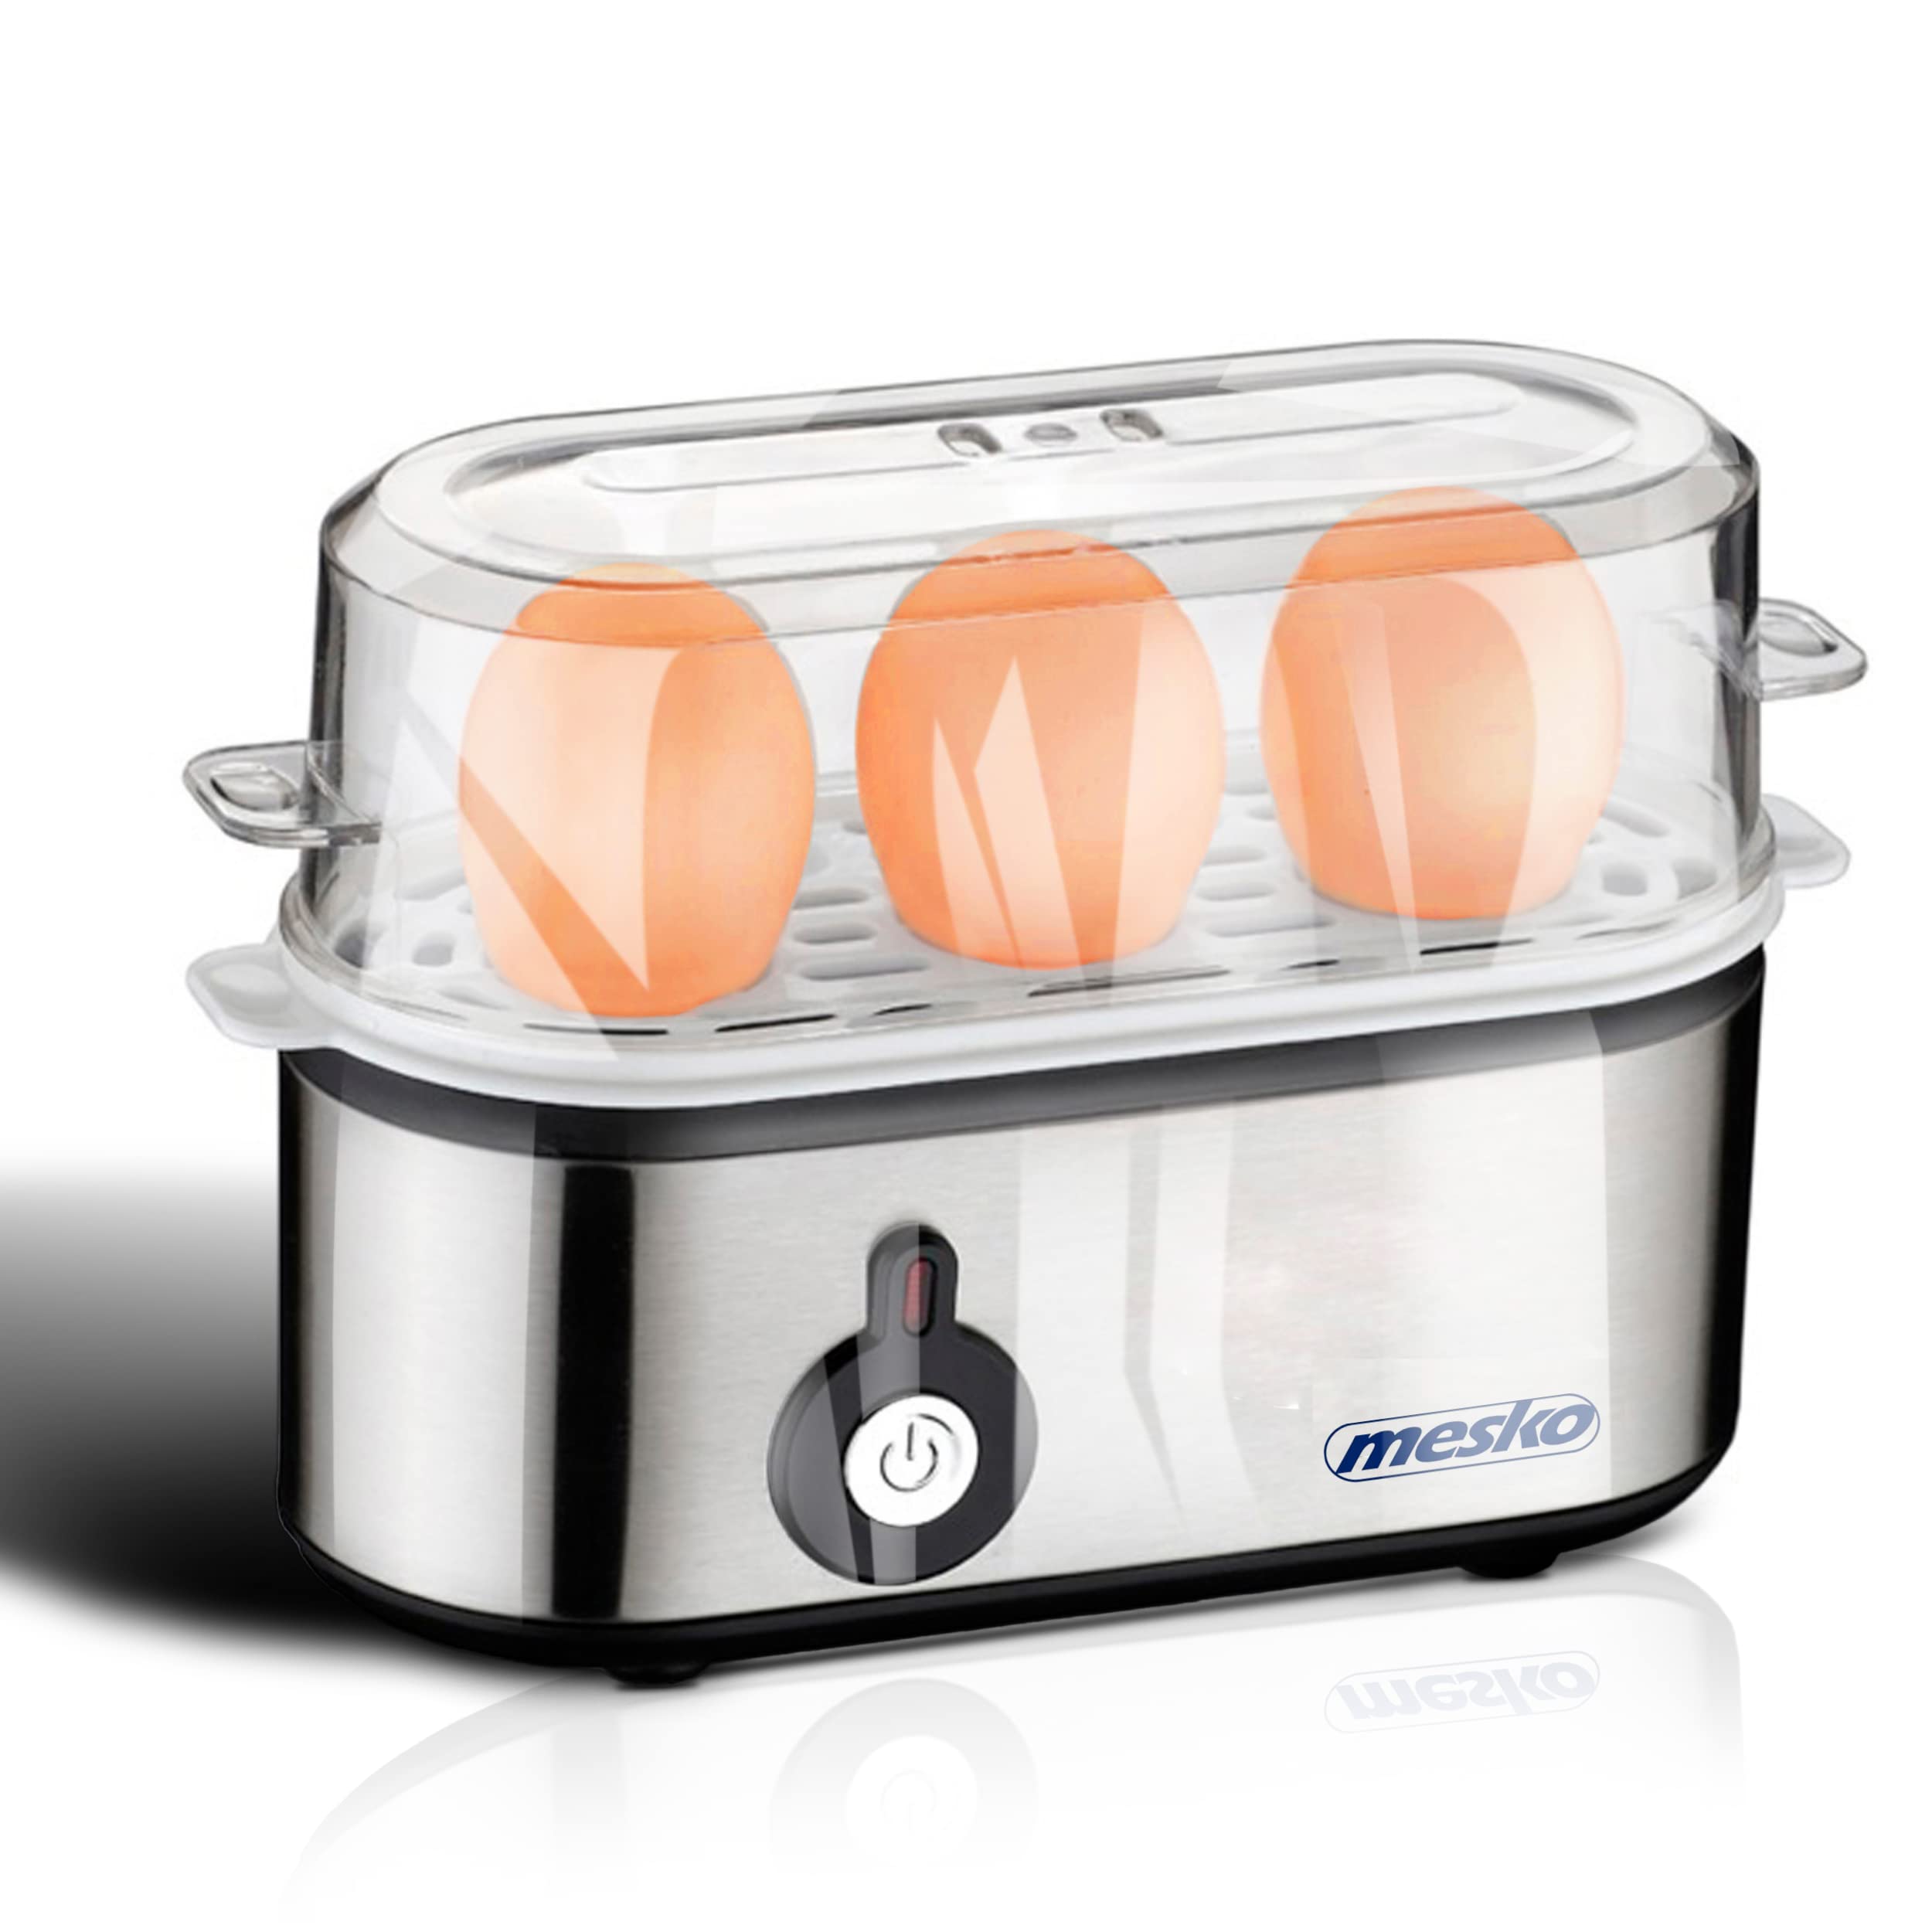 NEU! Mesko - Eierkocher, Elektrischer Eierkocher, Geeignet für 3 Eier, Edelstahl, Inklusive Messbecher mit Eipick, Einstellbare härte, Einfach zu bedienen.